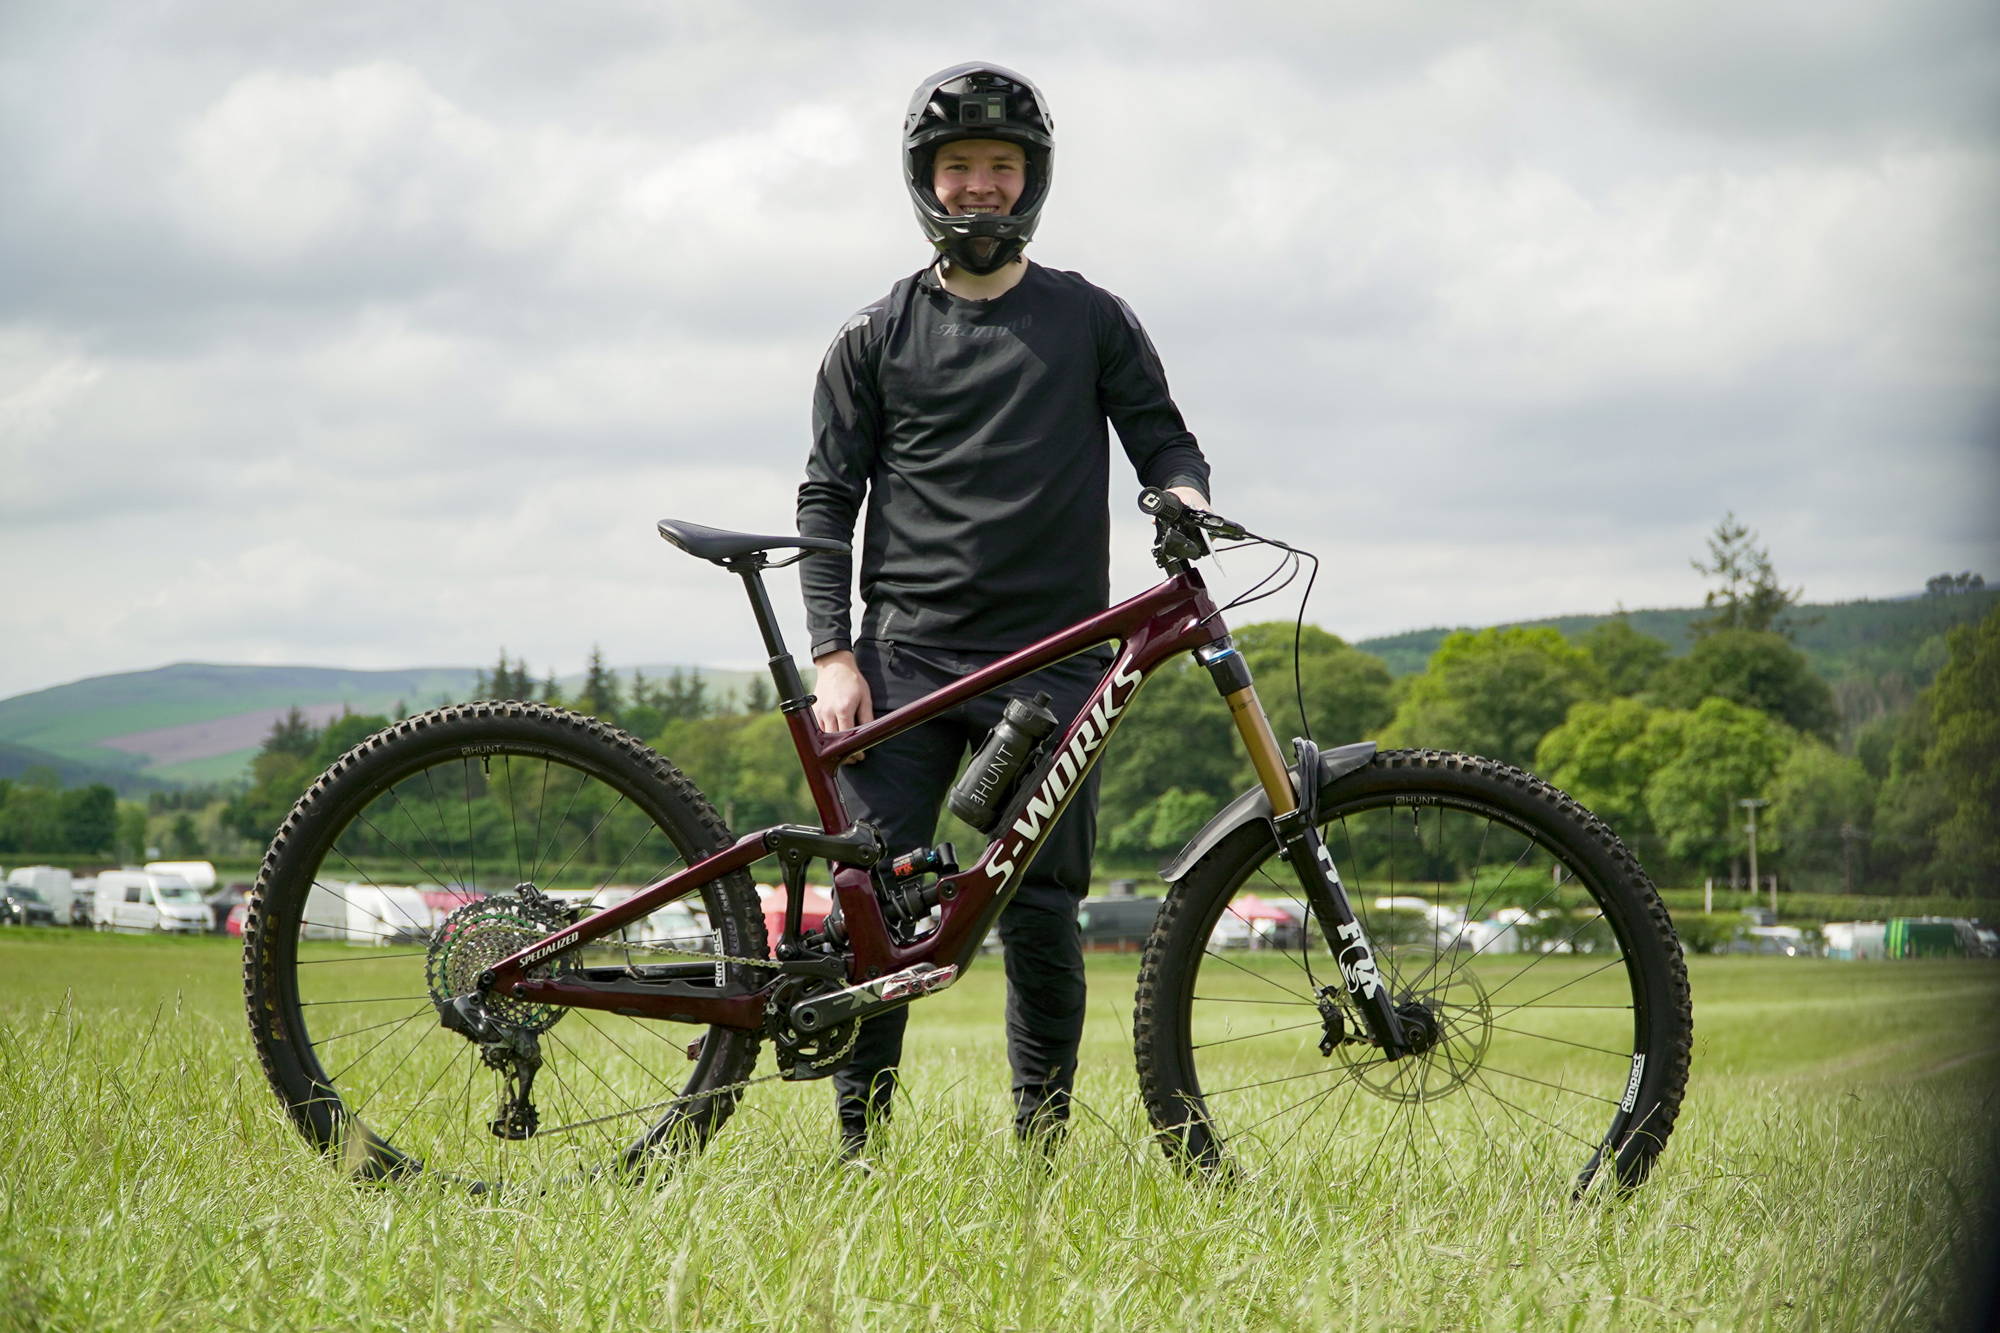 Hunt Athlete Henrik posting with his Sworks Bike